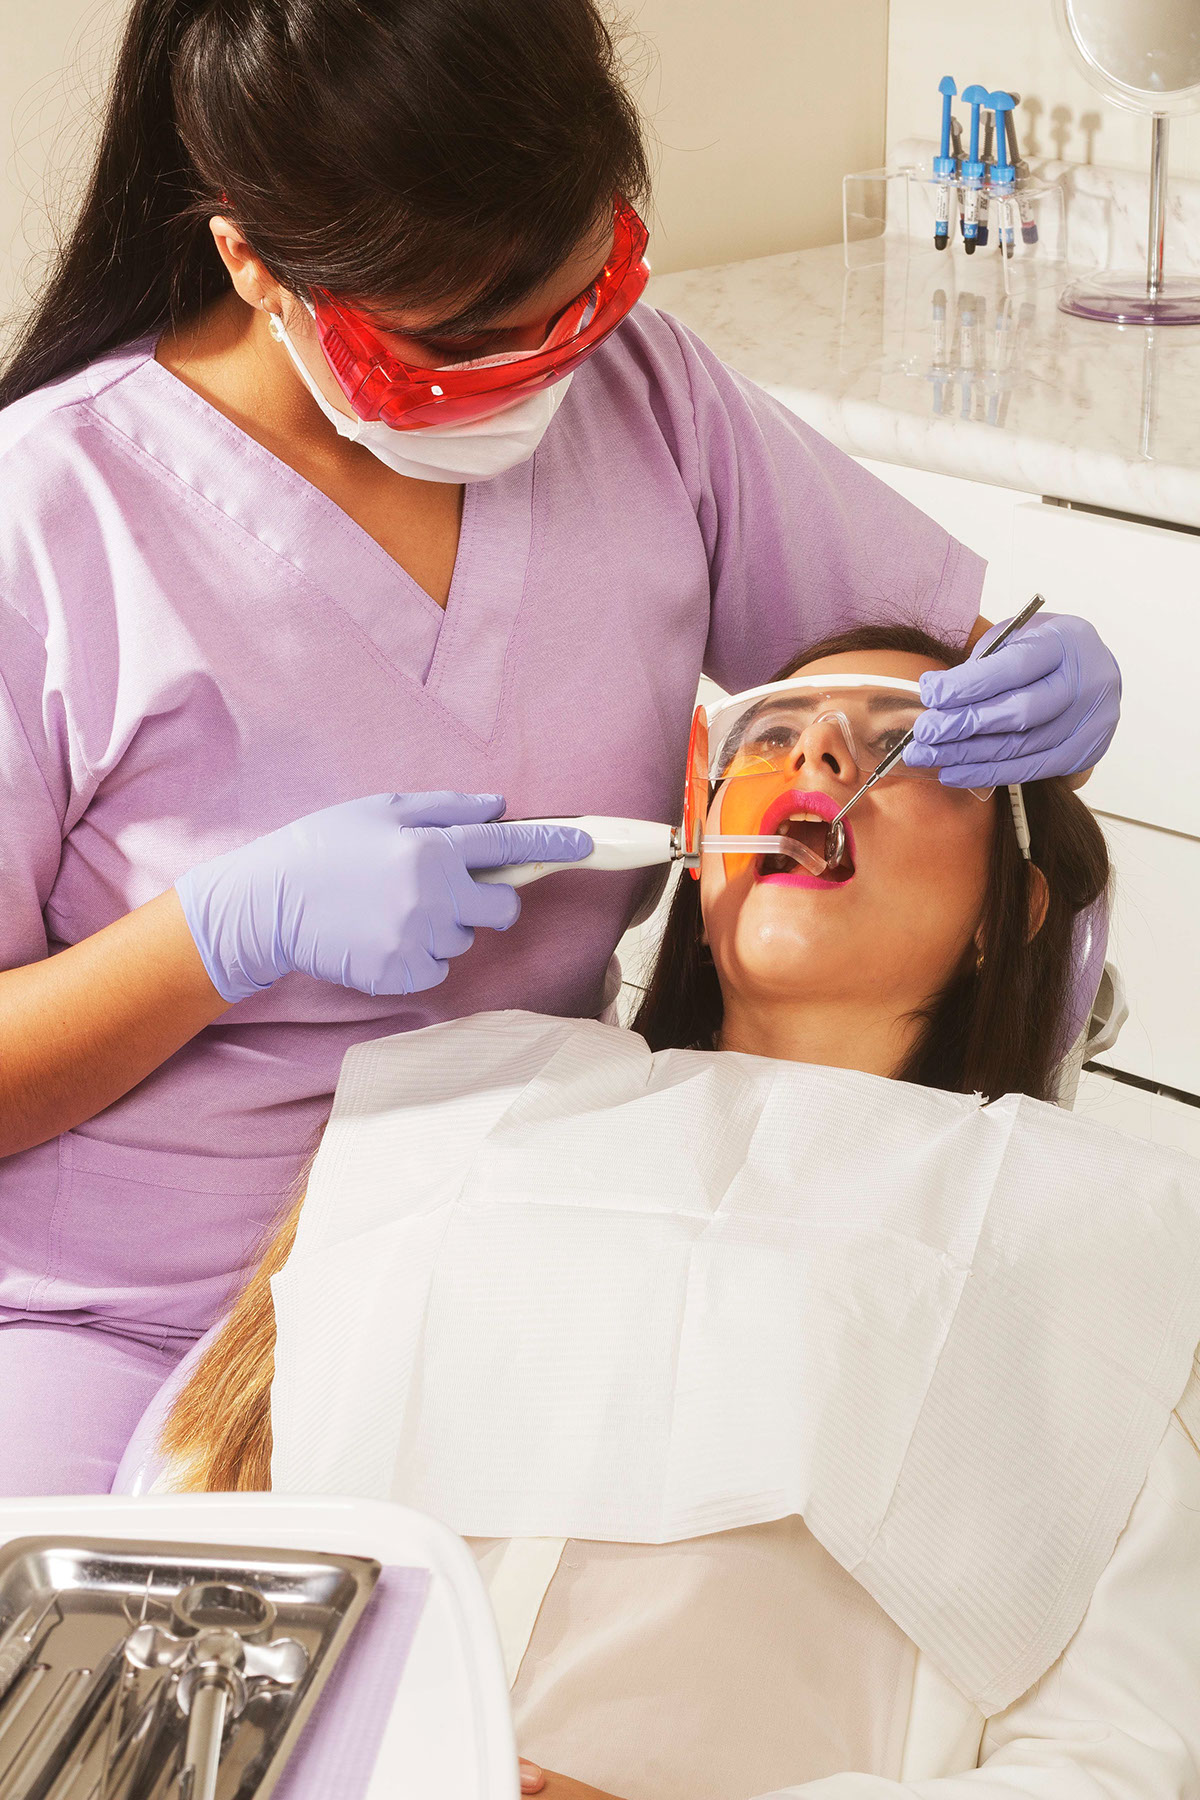 peru trujillo peruvian publicitario centro dental odontologico dental Odonto dent dentist dentista